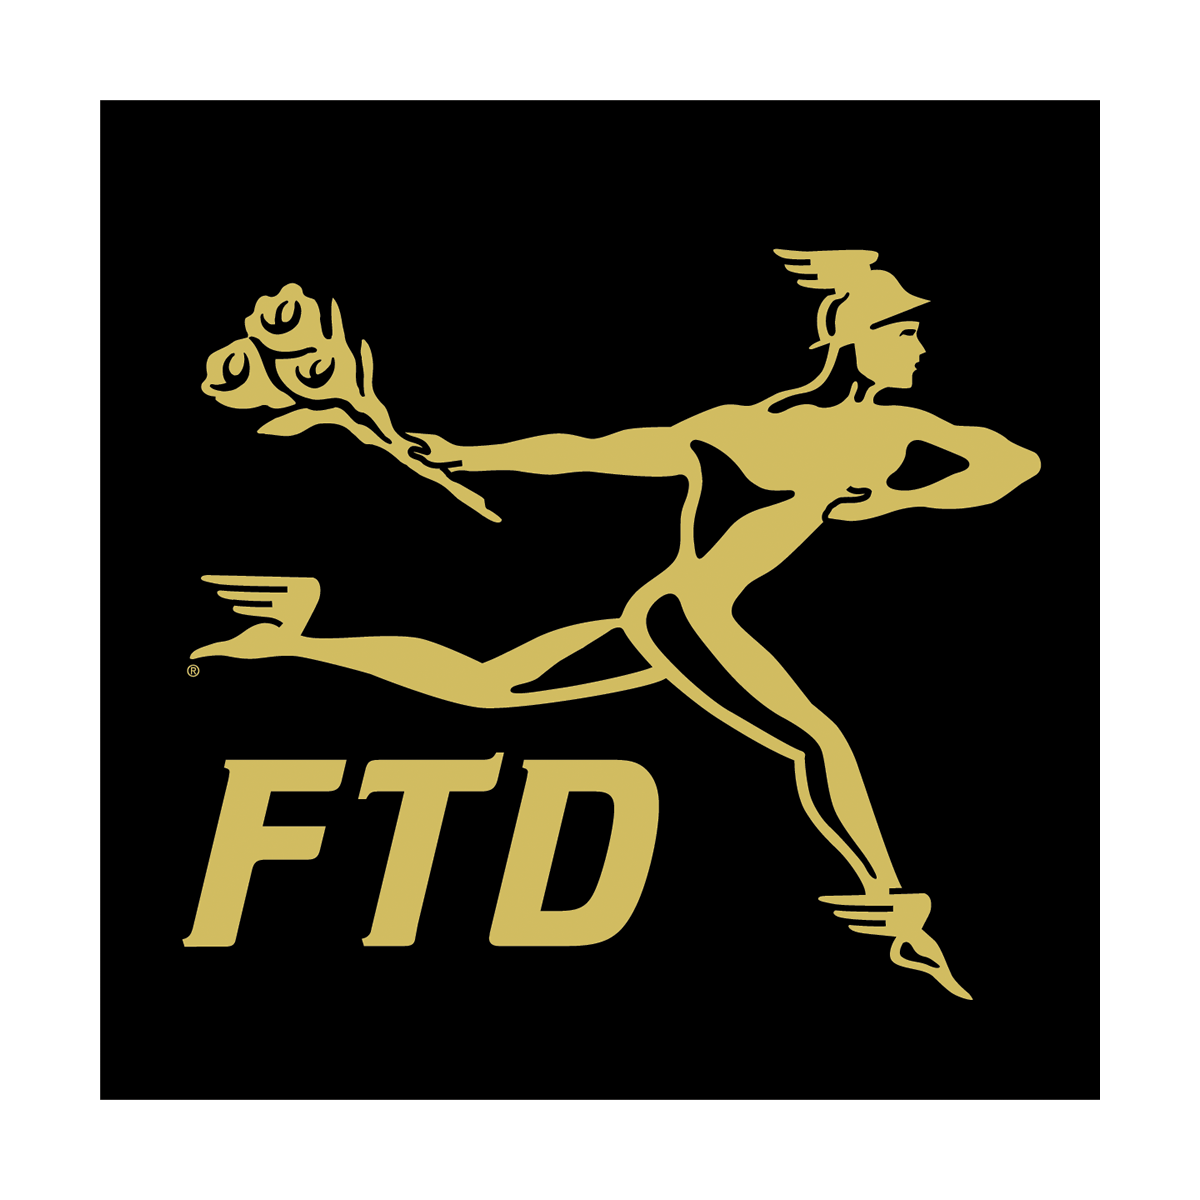 FTD Logo - Ftd florist Logos